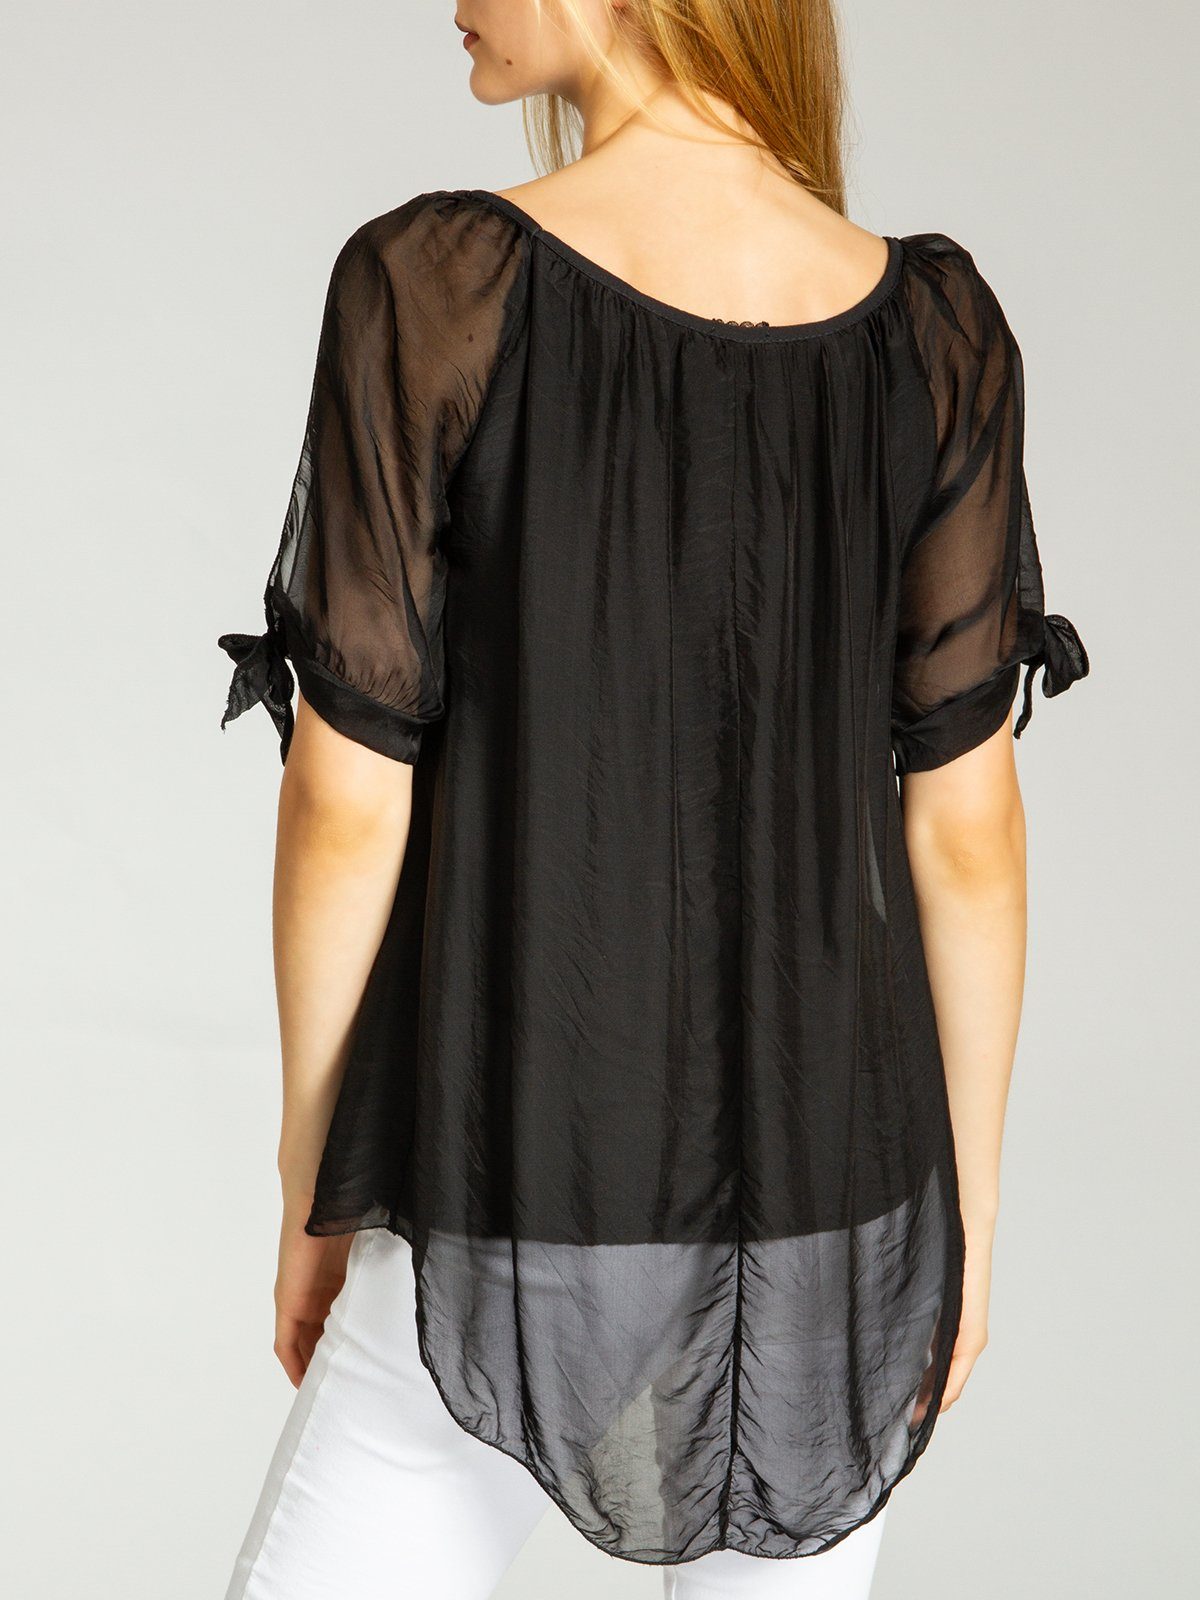 Seidenanteil lange leichte Damen Caspar elegante Shirtbluse Bluse Sommer mit BLU020 schwarz